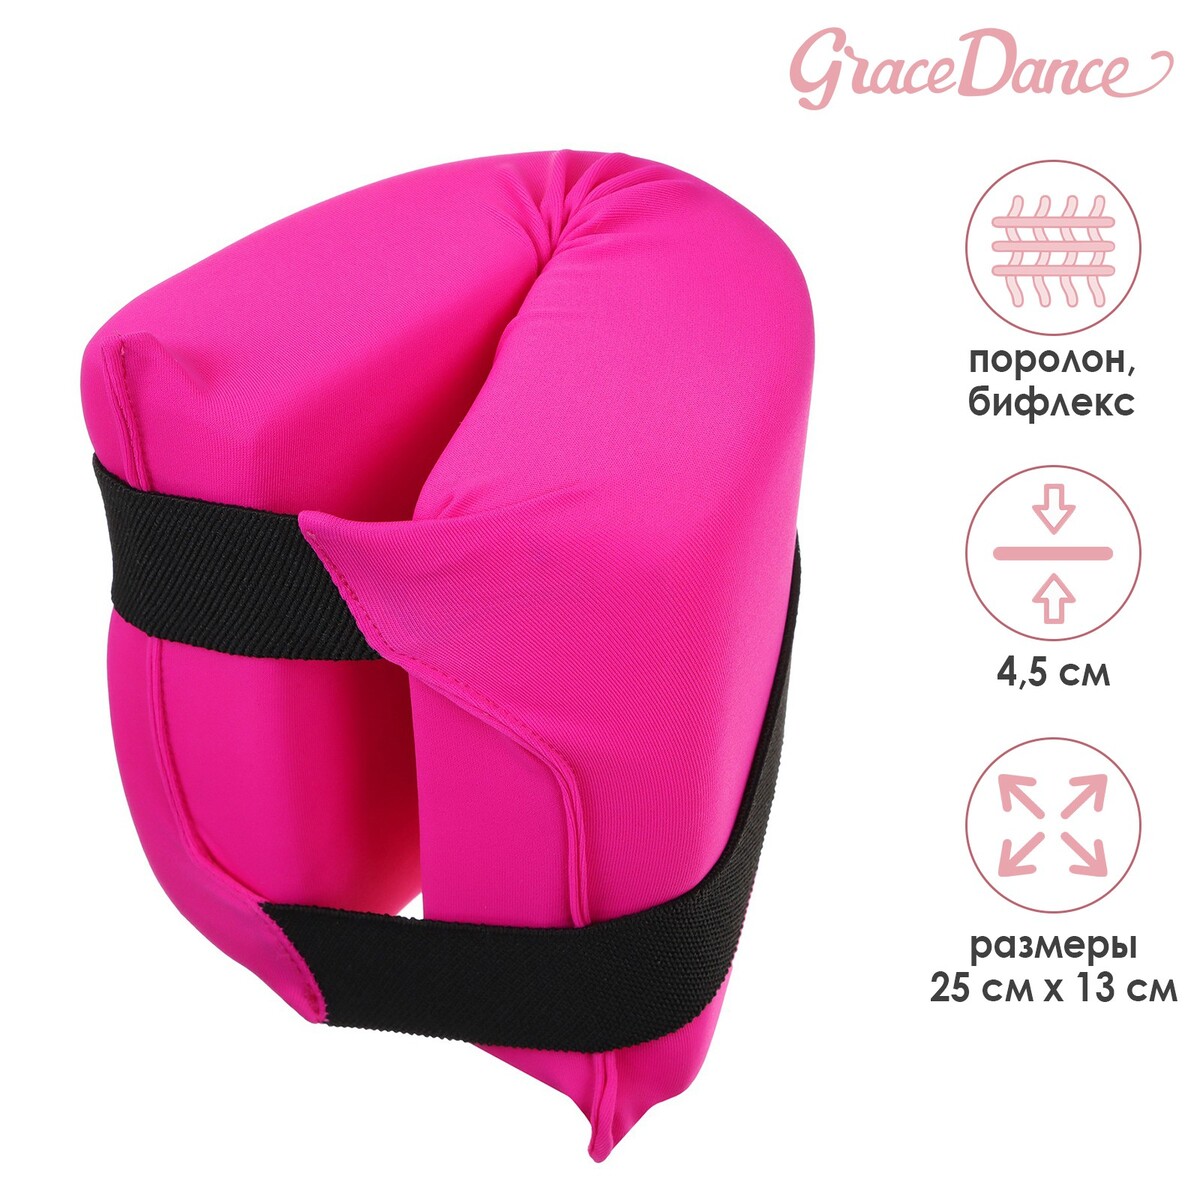 Подушка для растяжки grace dance, цвет фуксия подушка гимнастическая для растяжки grace dance 38х25 см фуксия